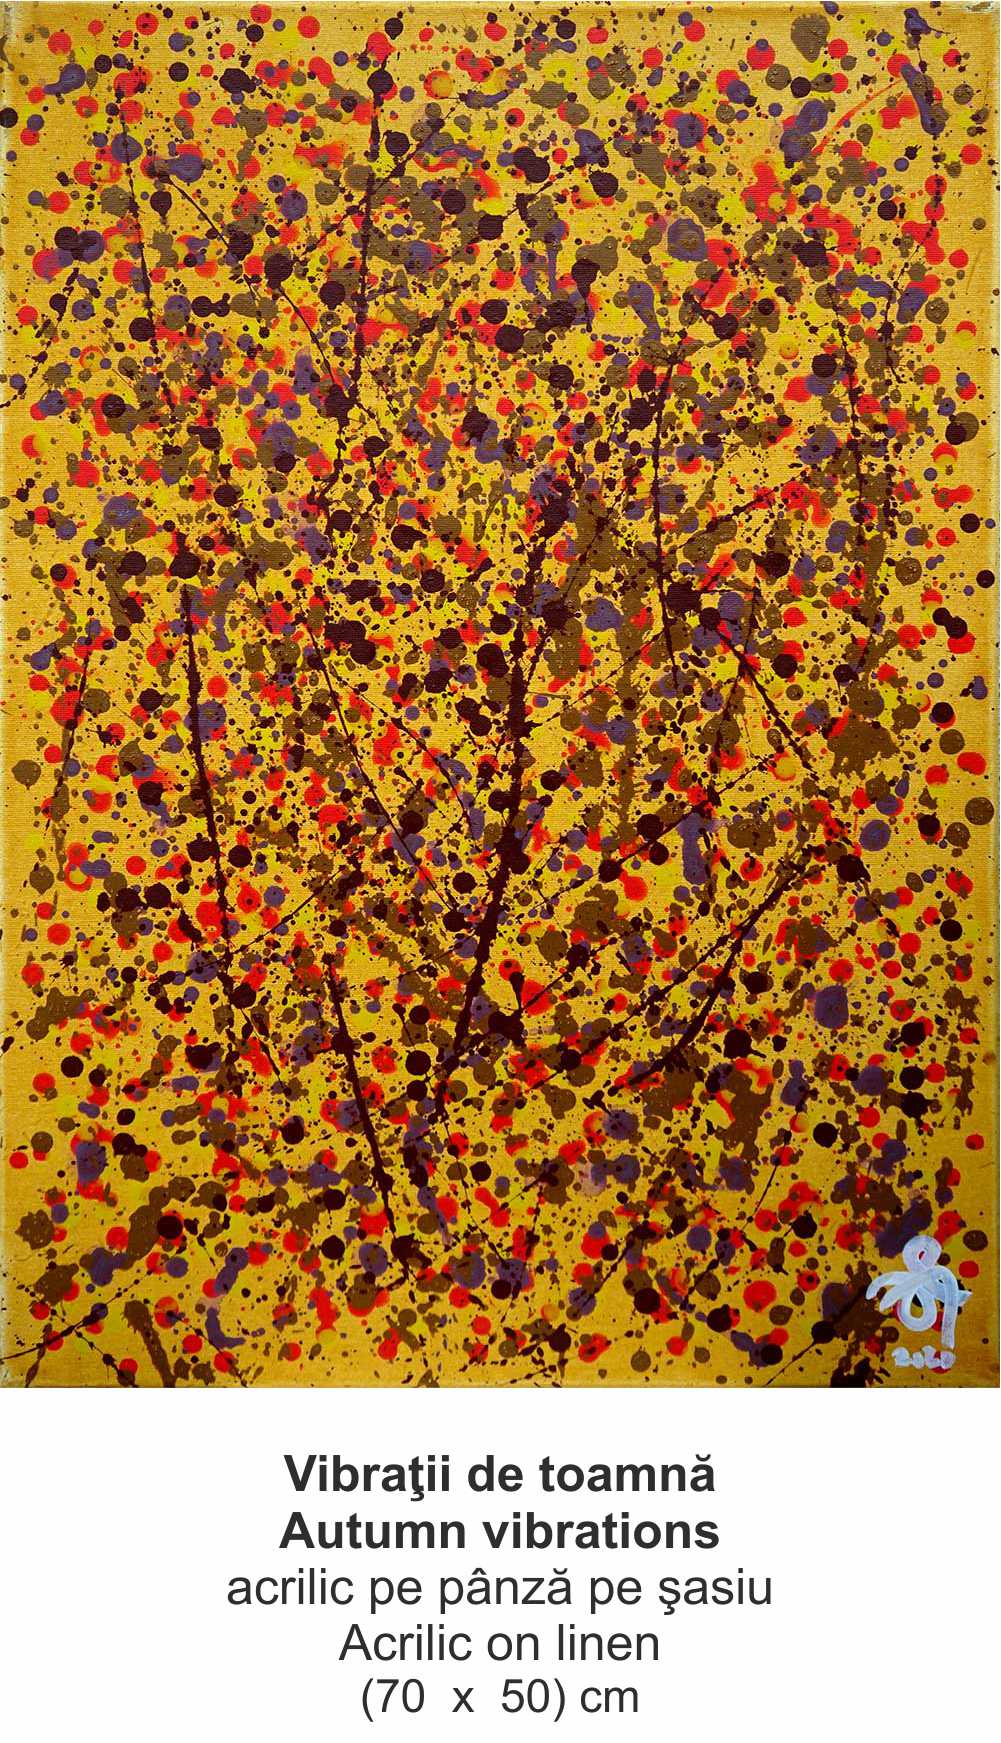 „Vibraţii de toamnă” („Autumn vibrations”) - acrilic pe pânză pe şasiu (Acrilic on linen) - (70  x  50) cm - img 48